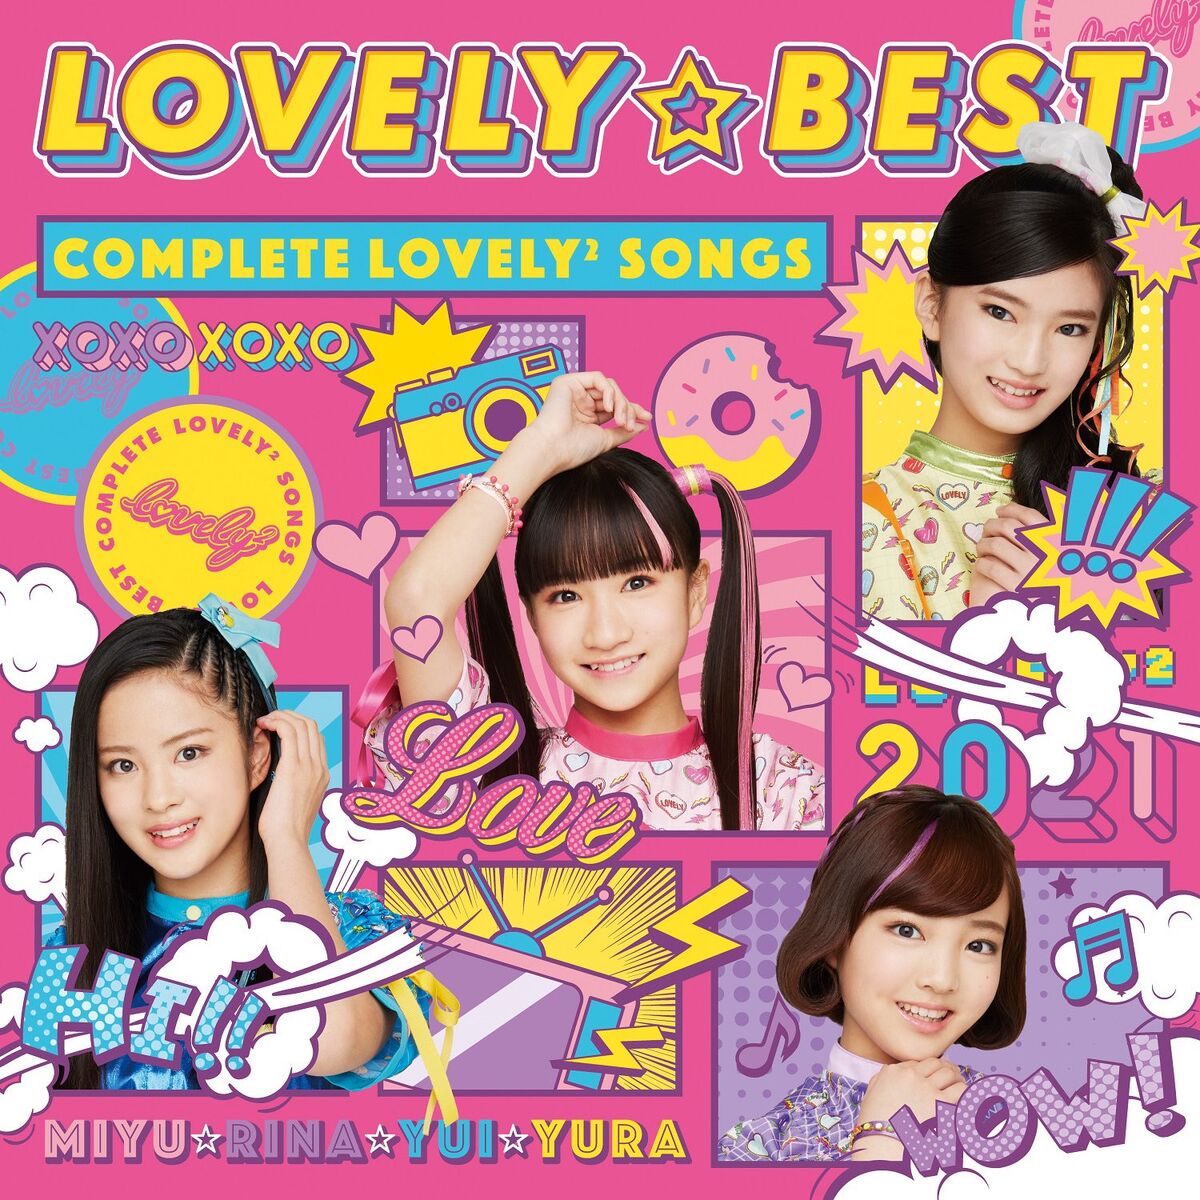 LOVELY☆BEST -Complete lovely² Songs- | Girls x Heroine Wiki | Fandom